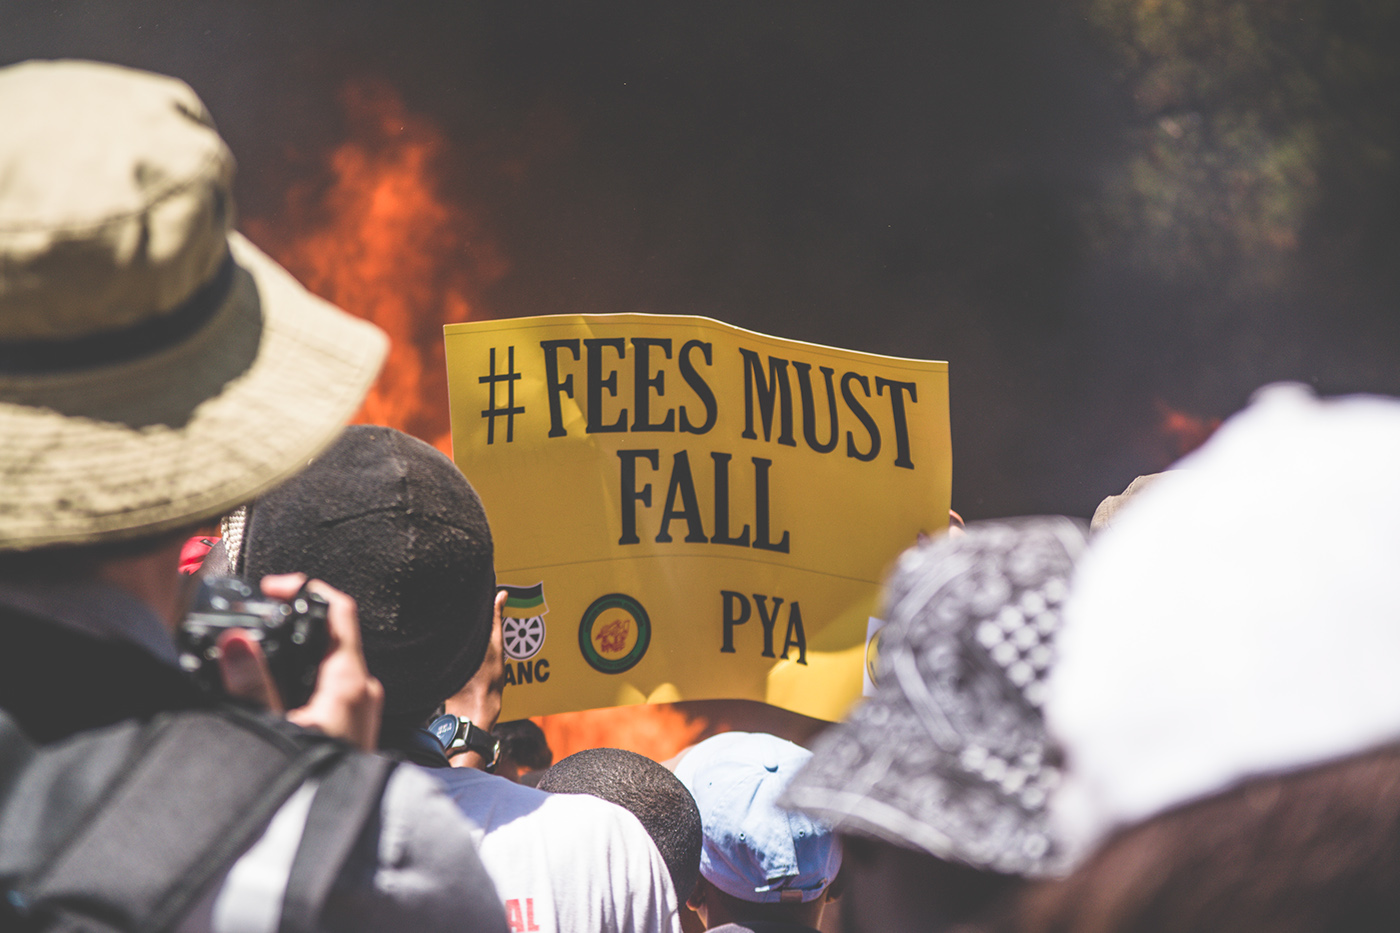 fees must fall strike